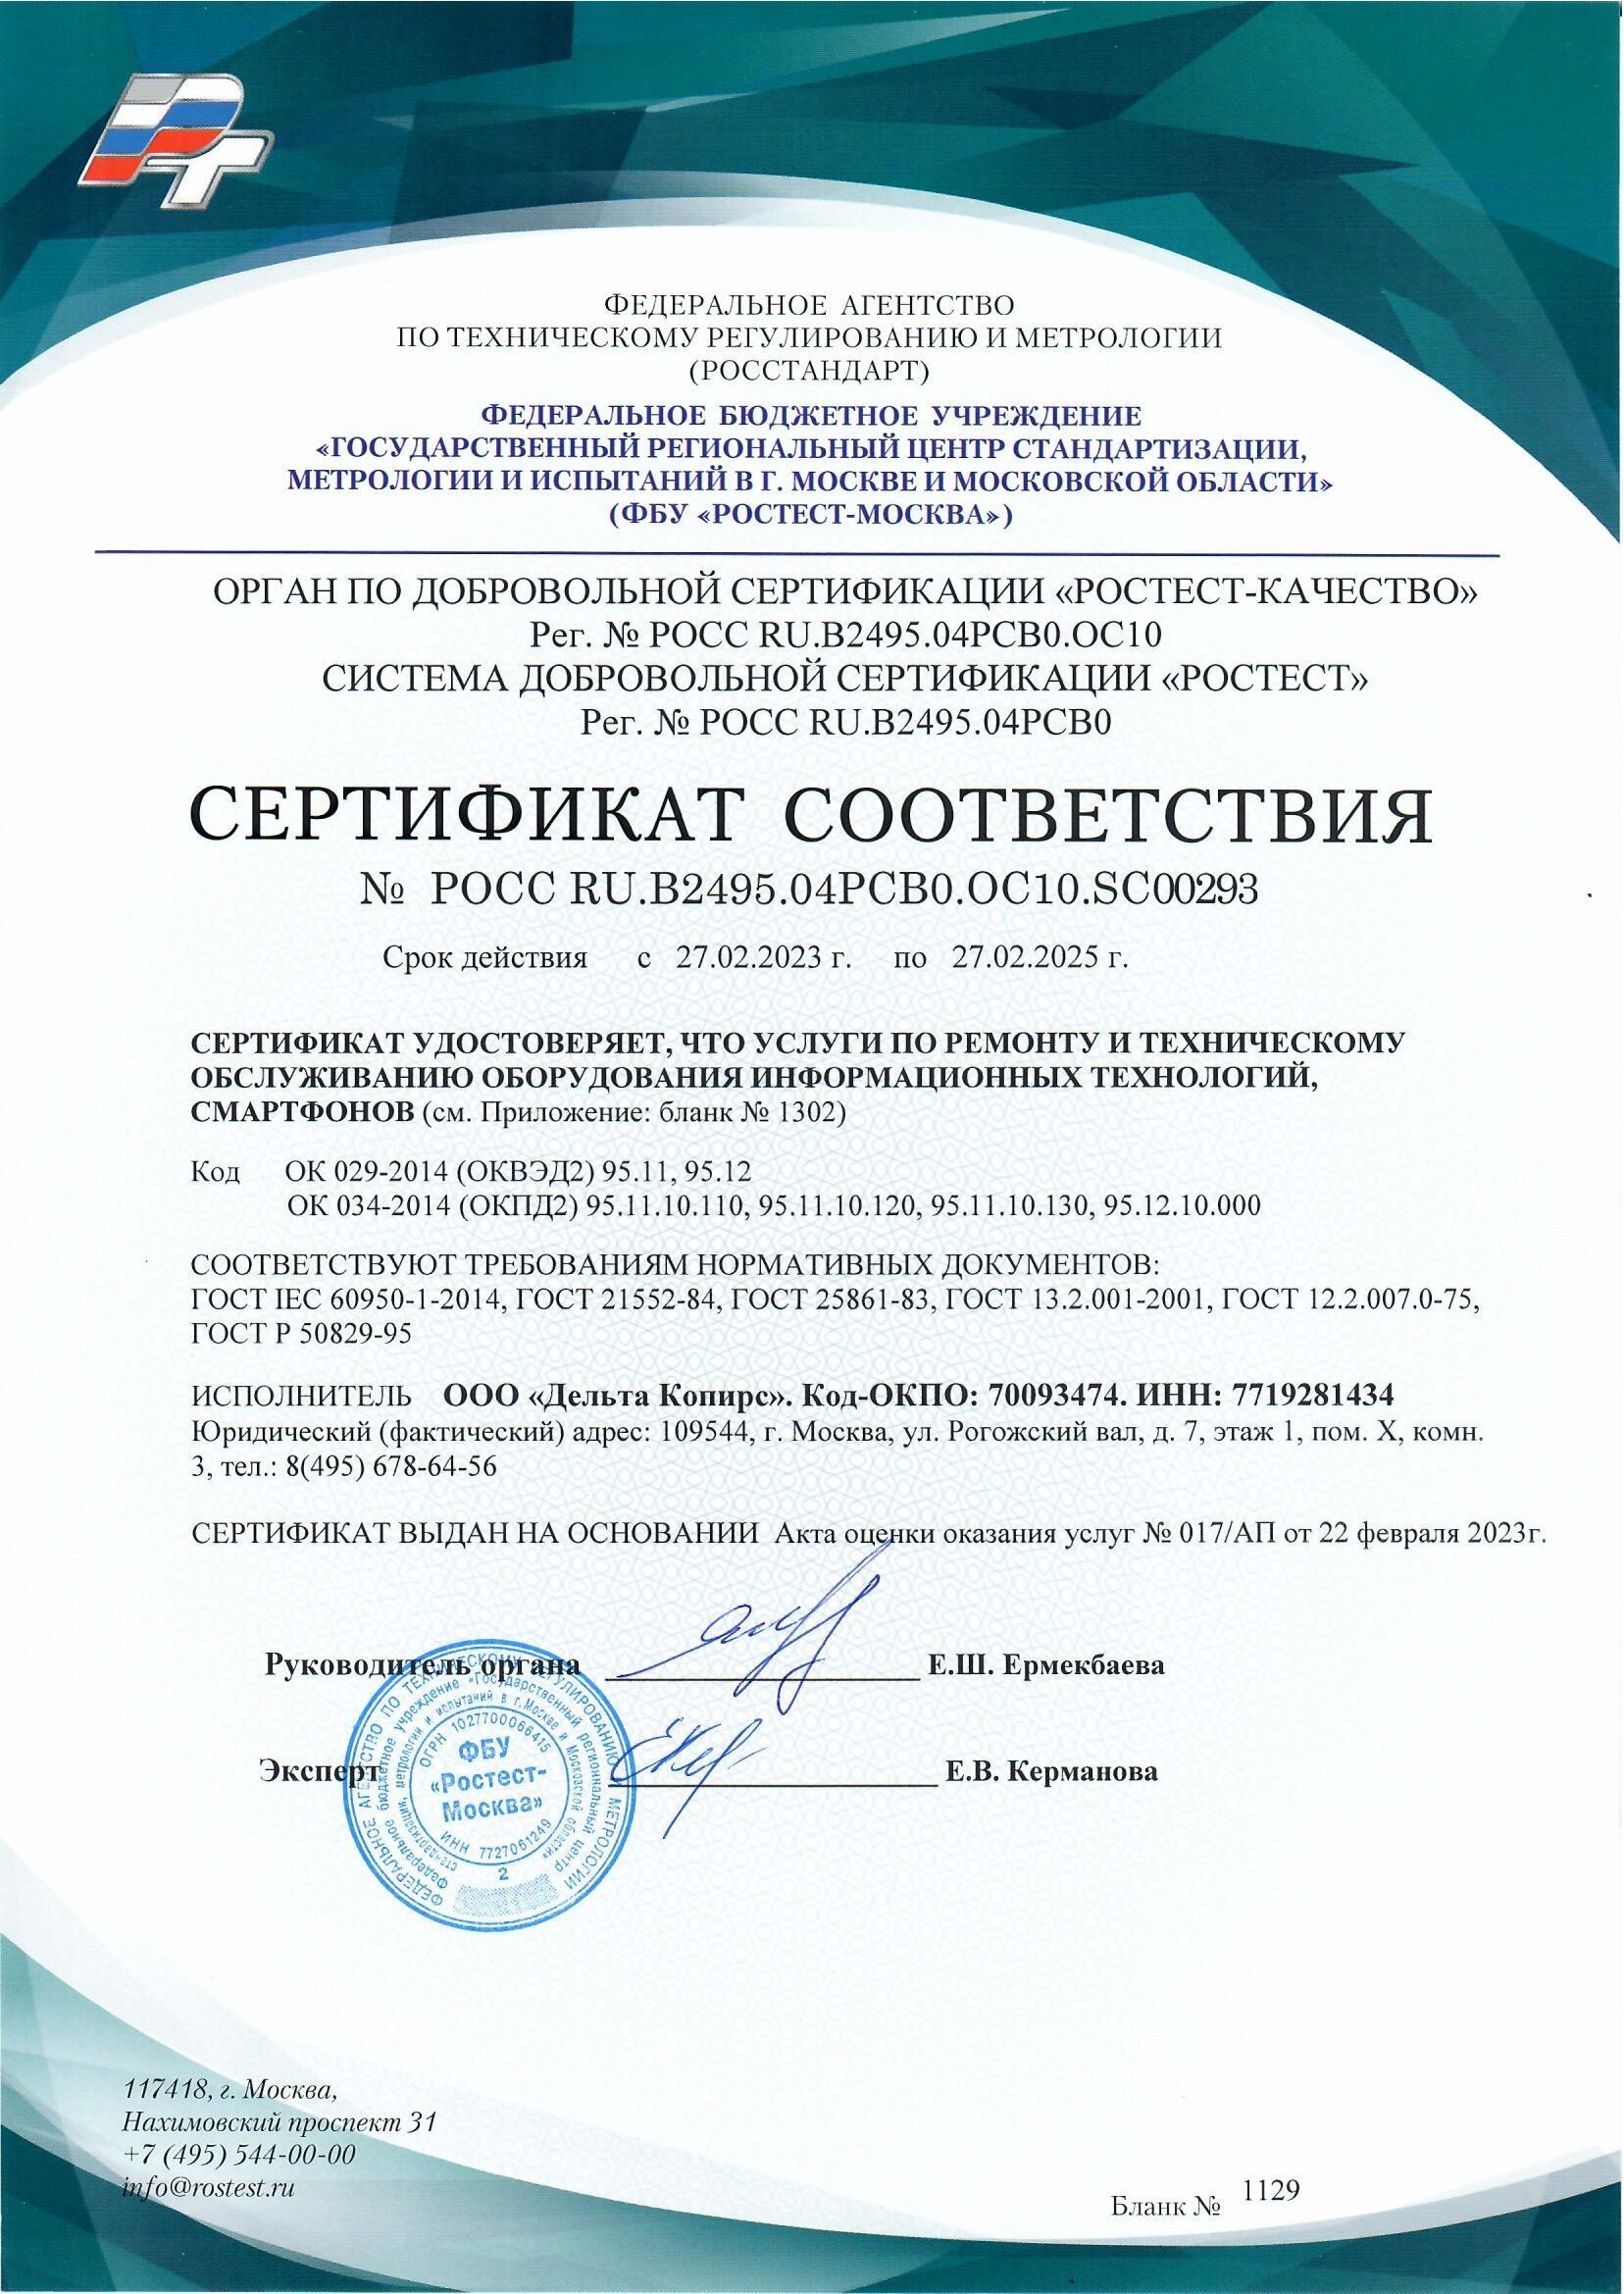 сертификаты дельта копирс (2)